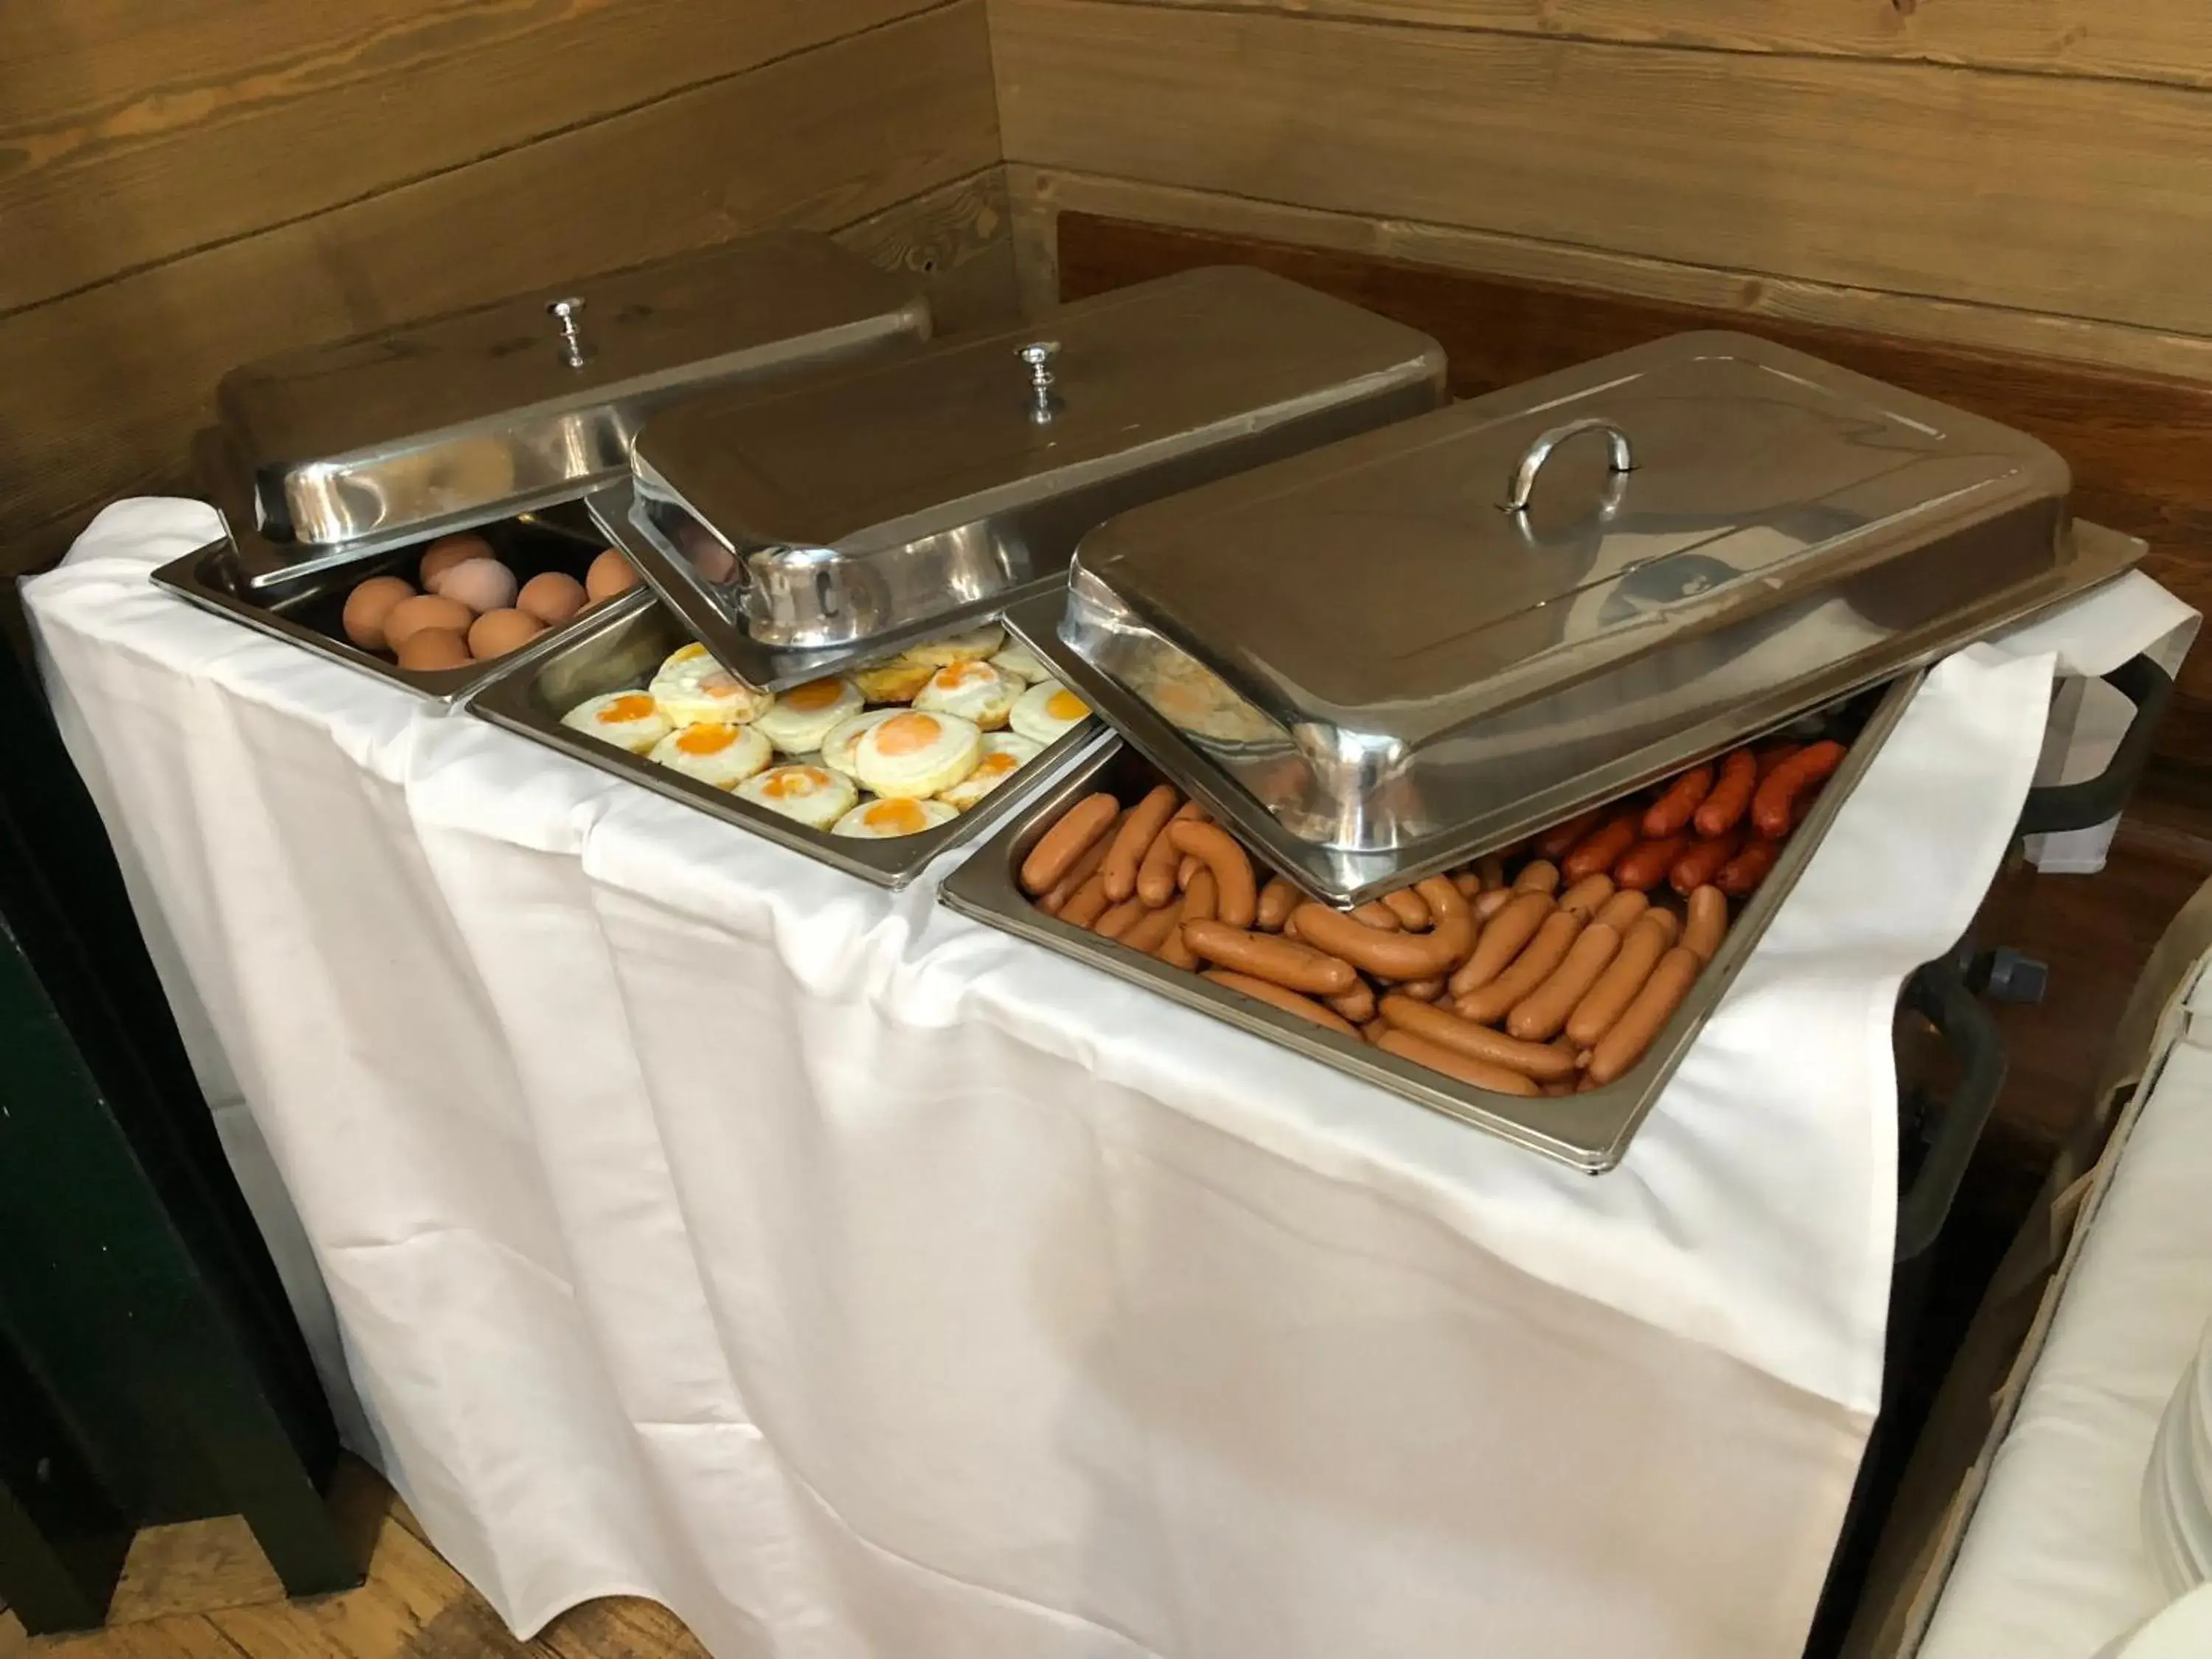 Buffet breakfast in U Medvidku-Brewery Hotel